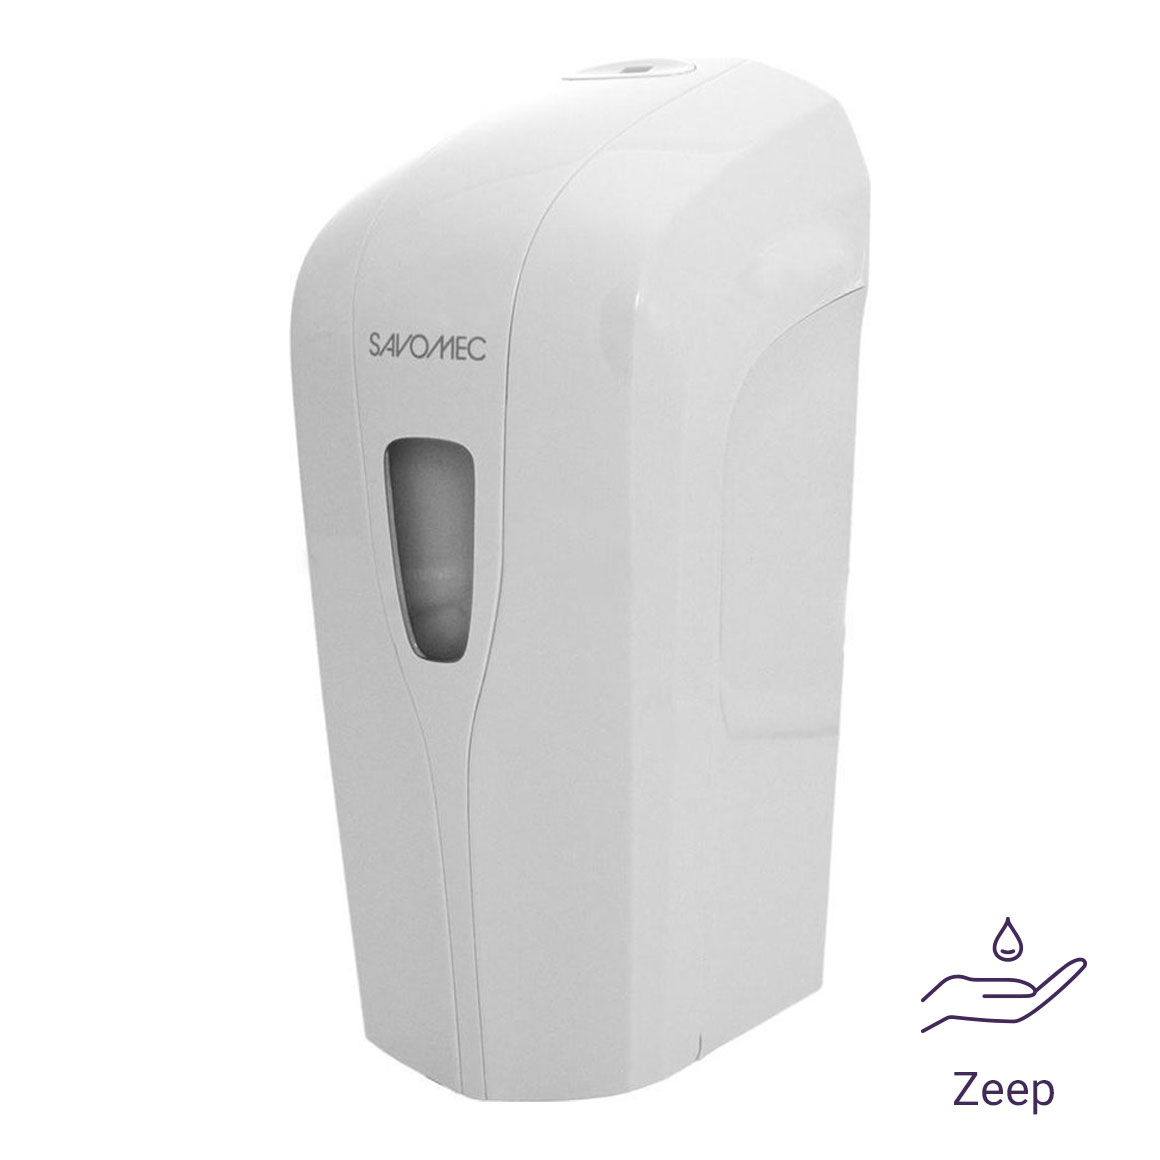 Savomec automatische zeep/gel dispenser